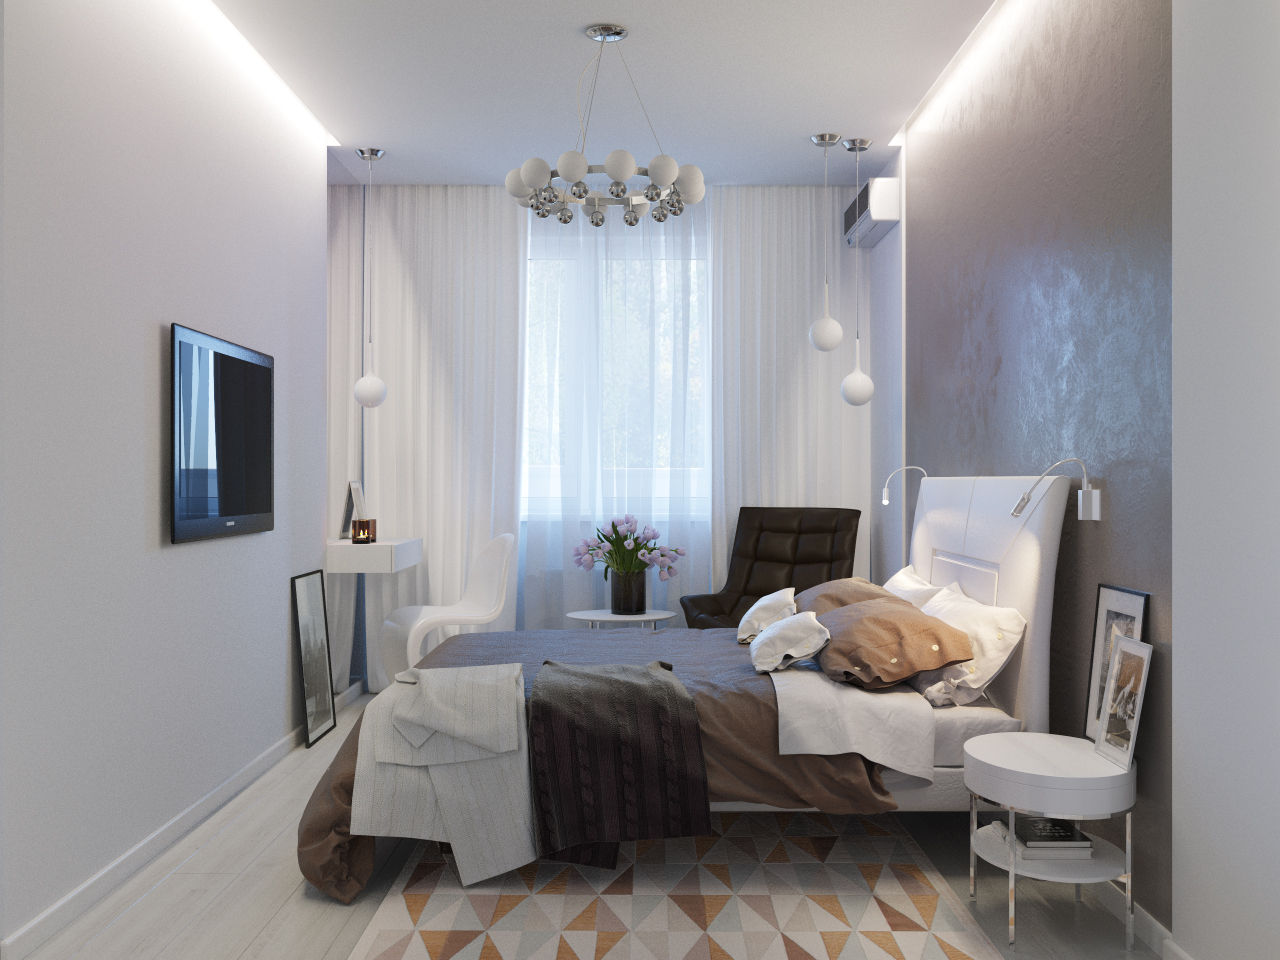 Квартира для современной пары, Оксана Мухина Оксана Мухина Minimalist bedroom